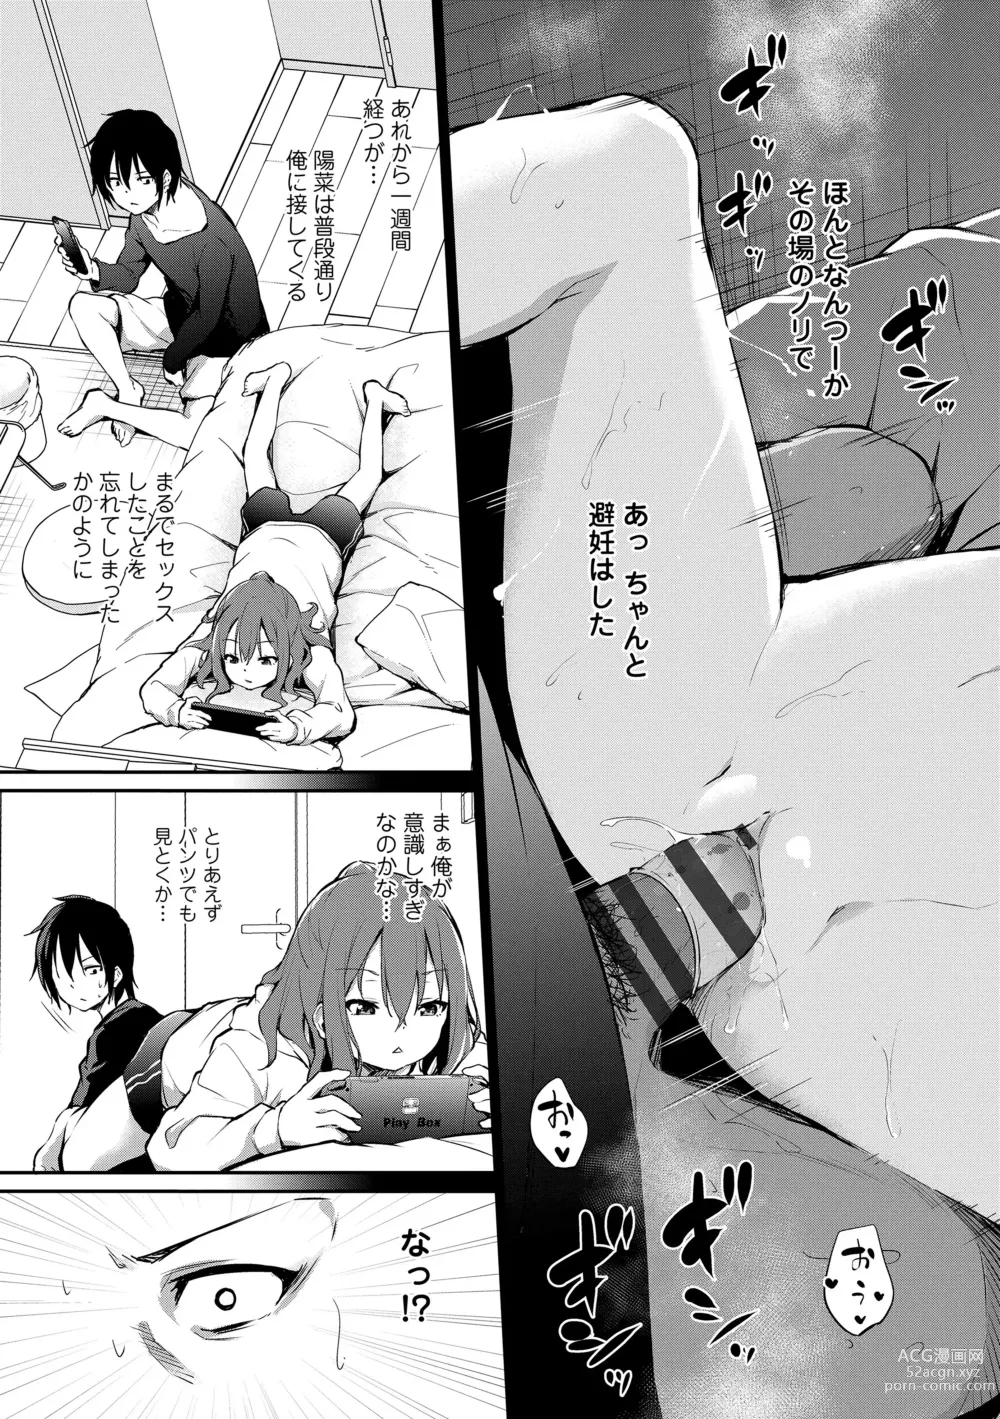 Page 9 of manga Imouto TRIP